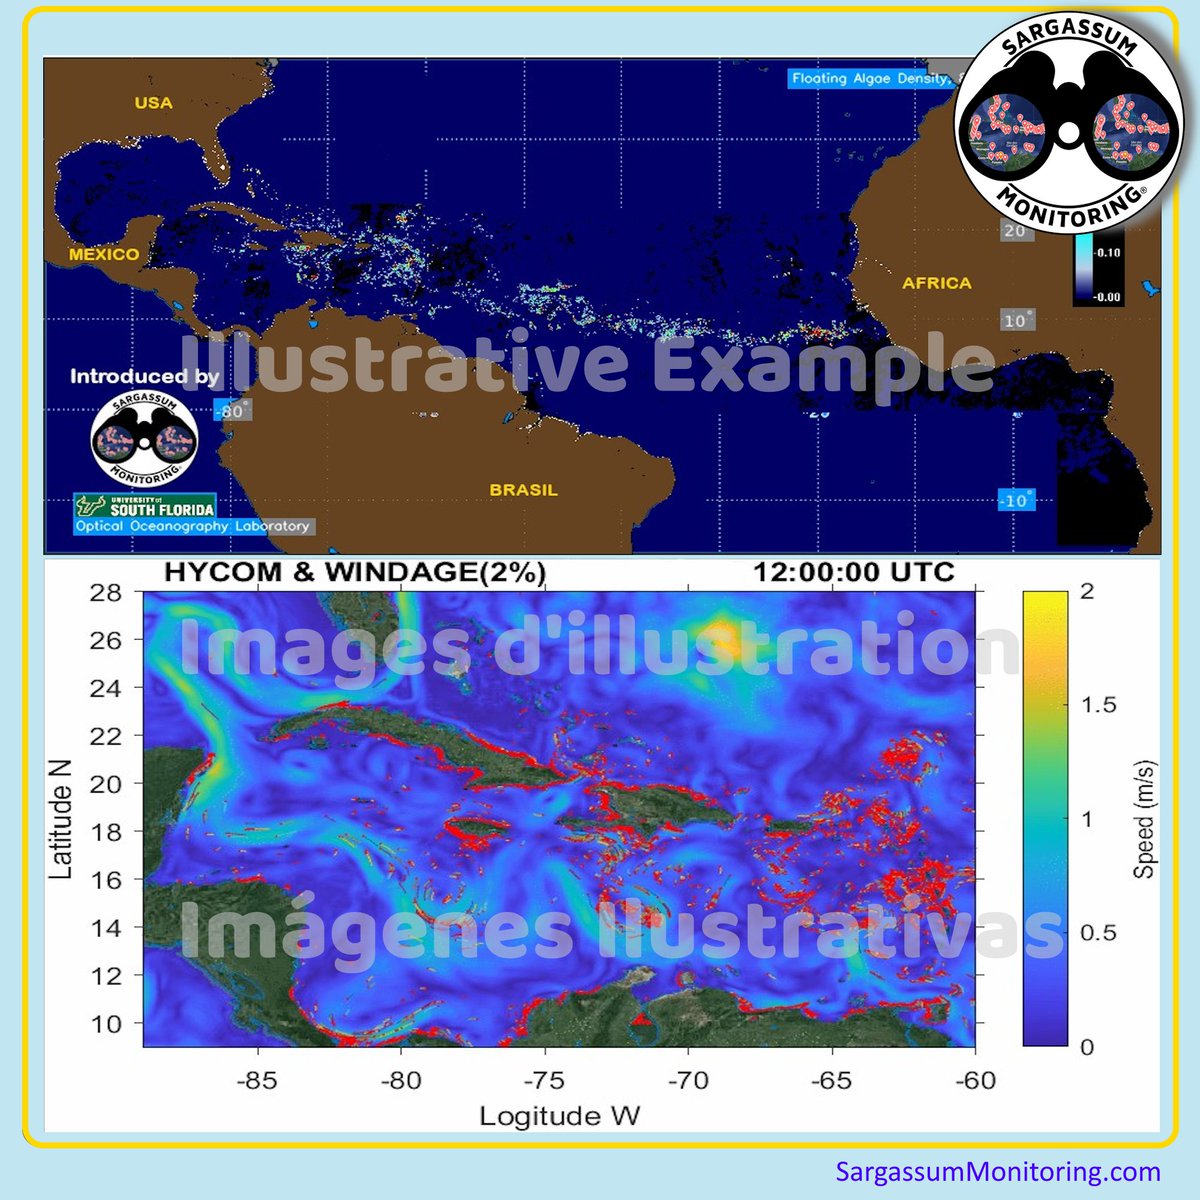 Big arrival of #sargassum in the Atlantic! #Caribbean #Atlantic , the latest forecast is on our website: sargassummonitoring.com/en/map-of-sarg… #Mexico #Mexique #DominicanRepublic #Florida #Caraibes #Caribe #RepubliqueDominicaine #USVI #BVI #Cuba #Jamaica #Jamaique #sargazo #sargasses